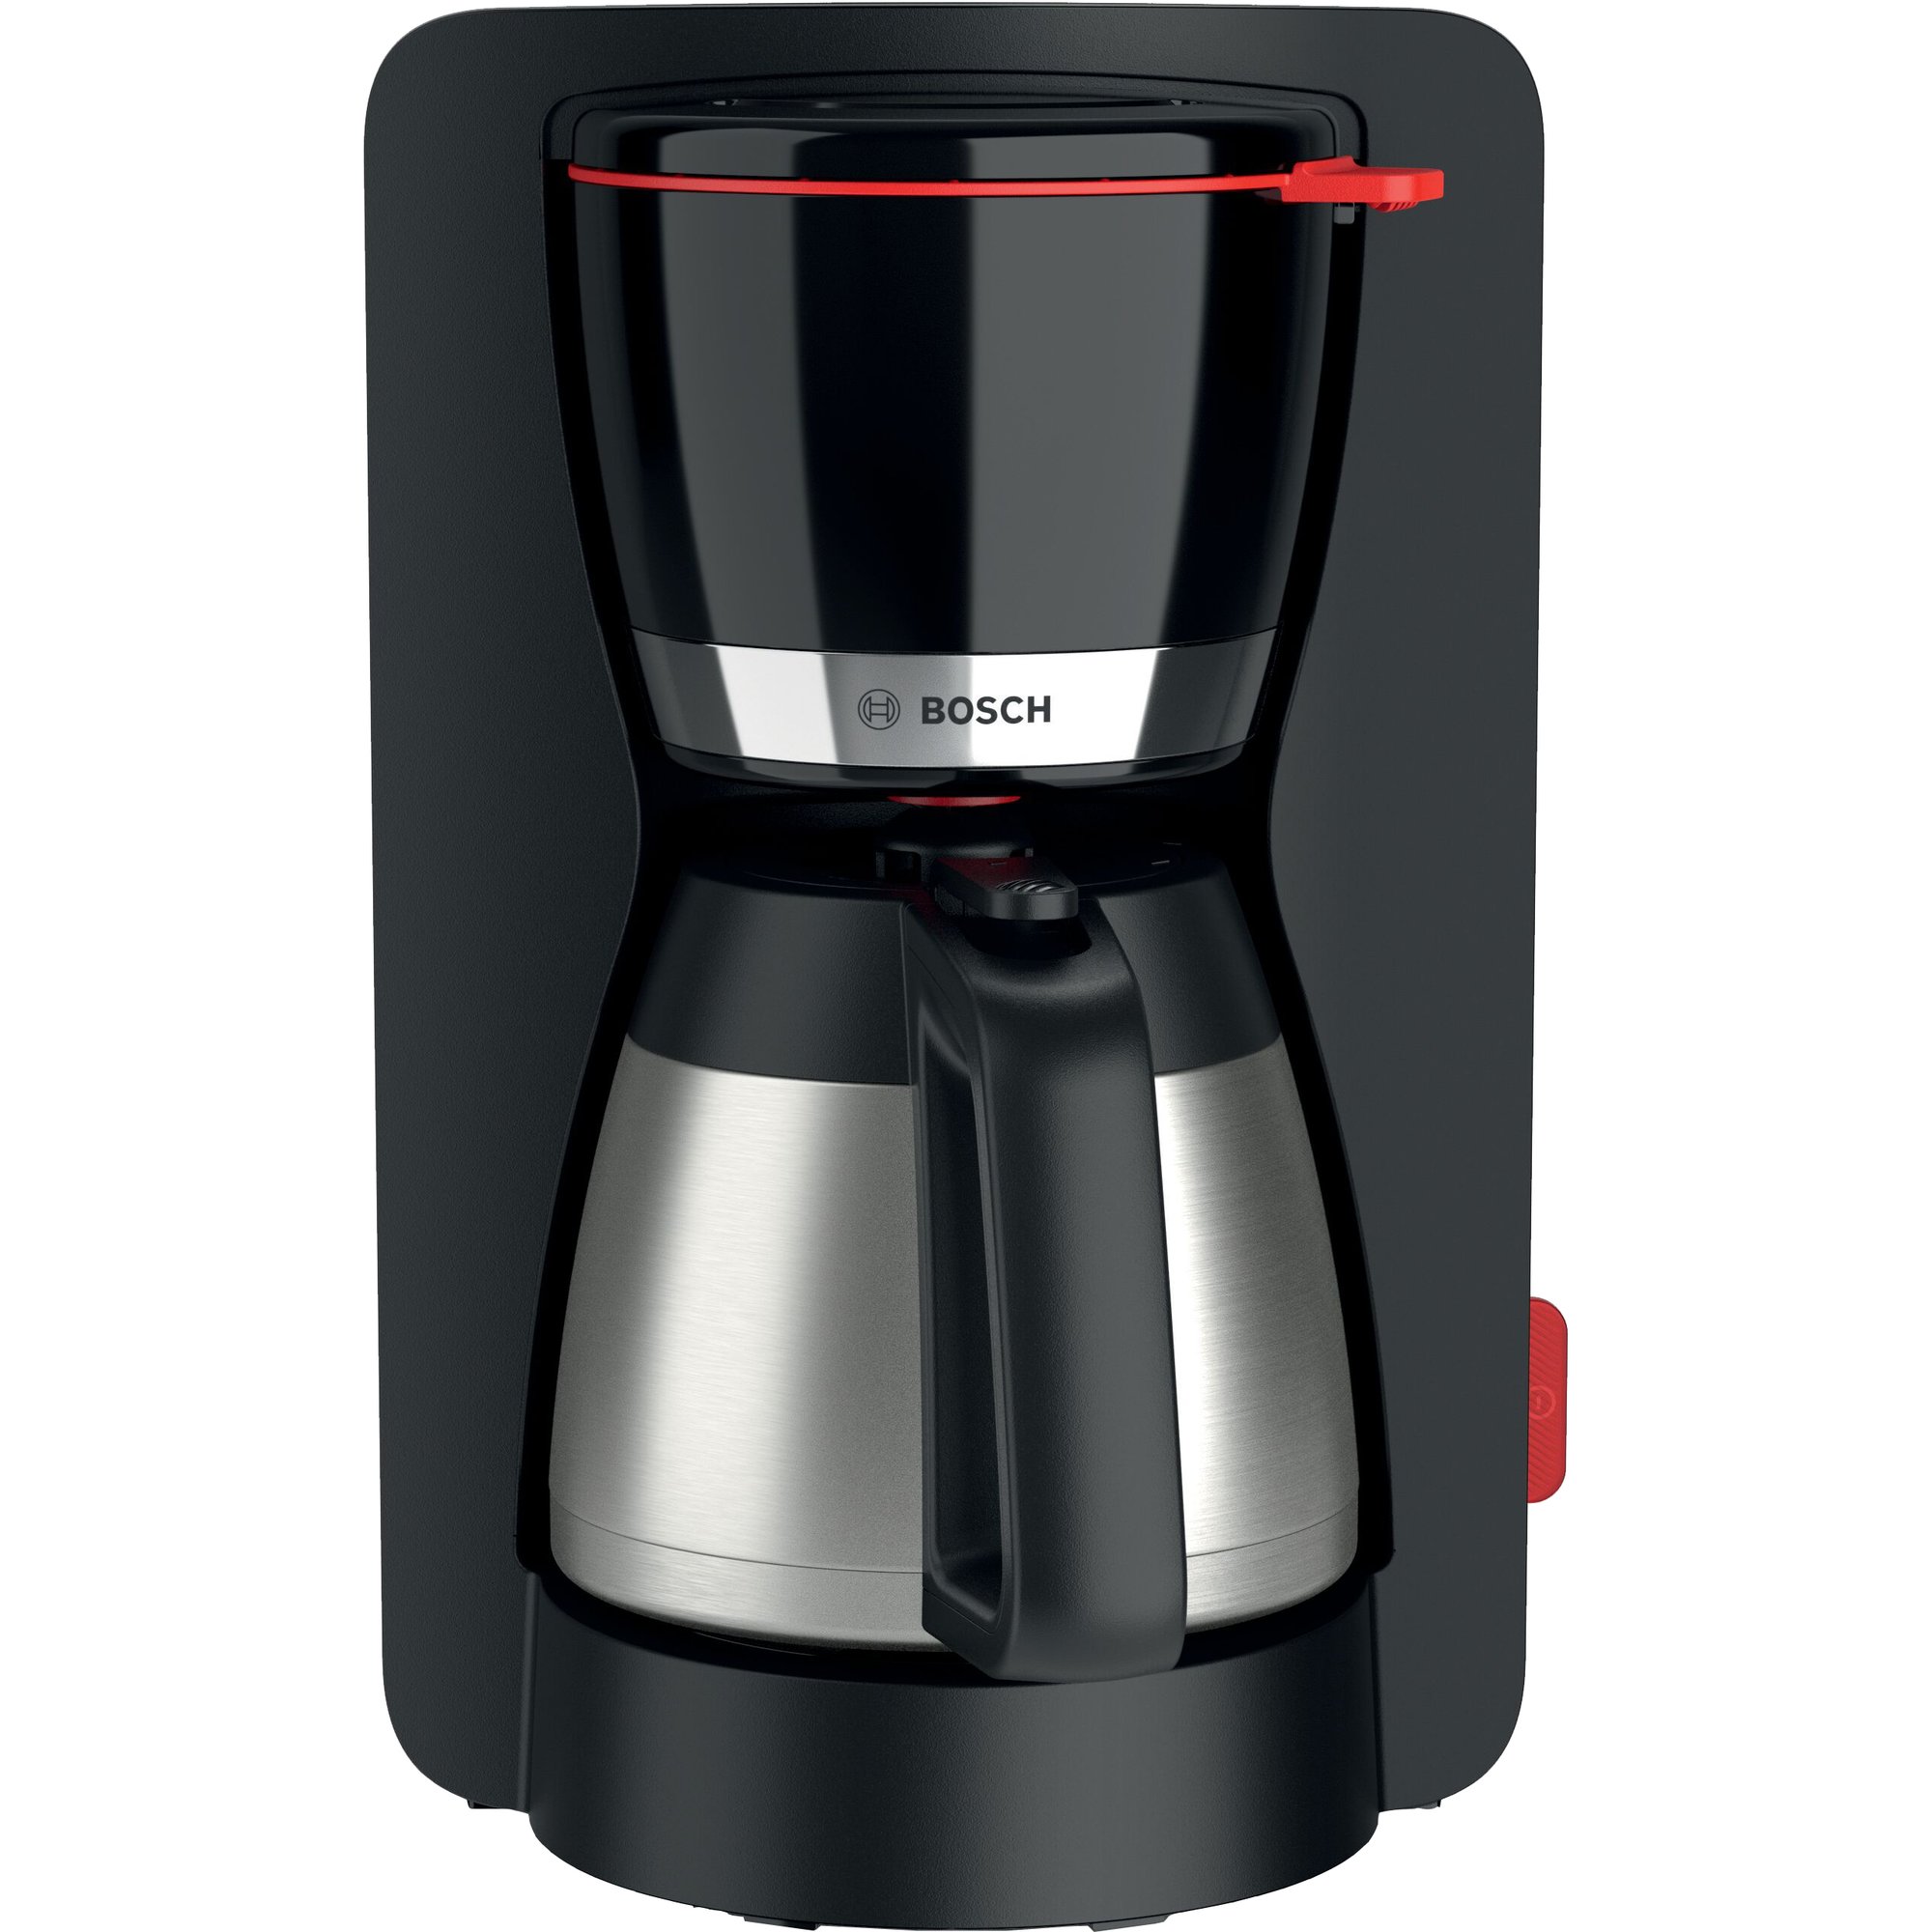 Bosch MyMoment kaffetrakter med termokanne, svart Kaffetrakter